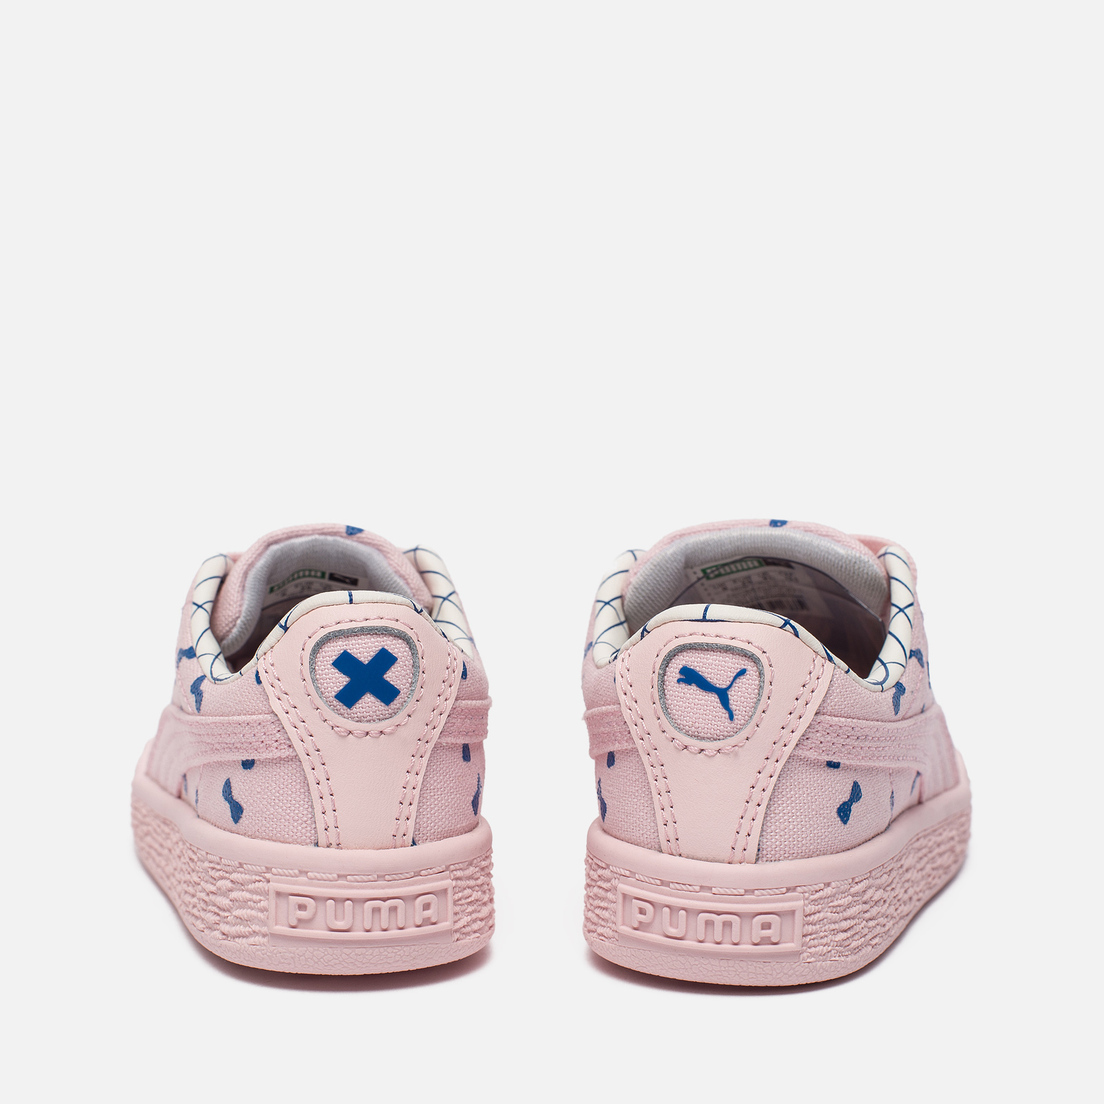 Puma Кроссовки для малышей x tinycottons Basket Canvas Infant